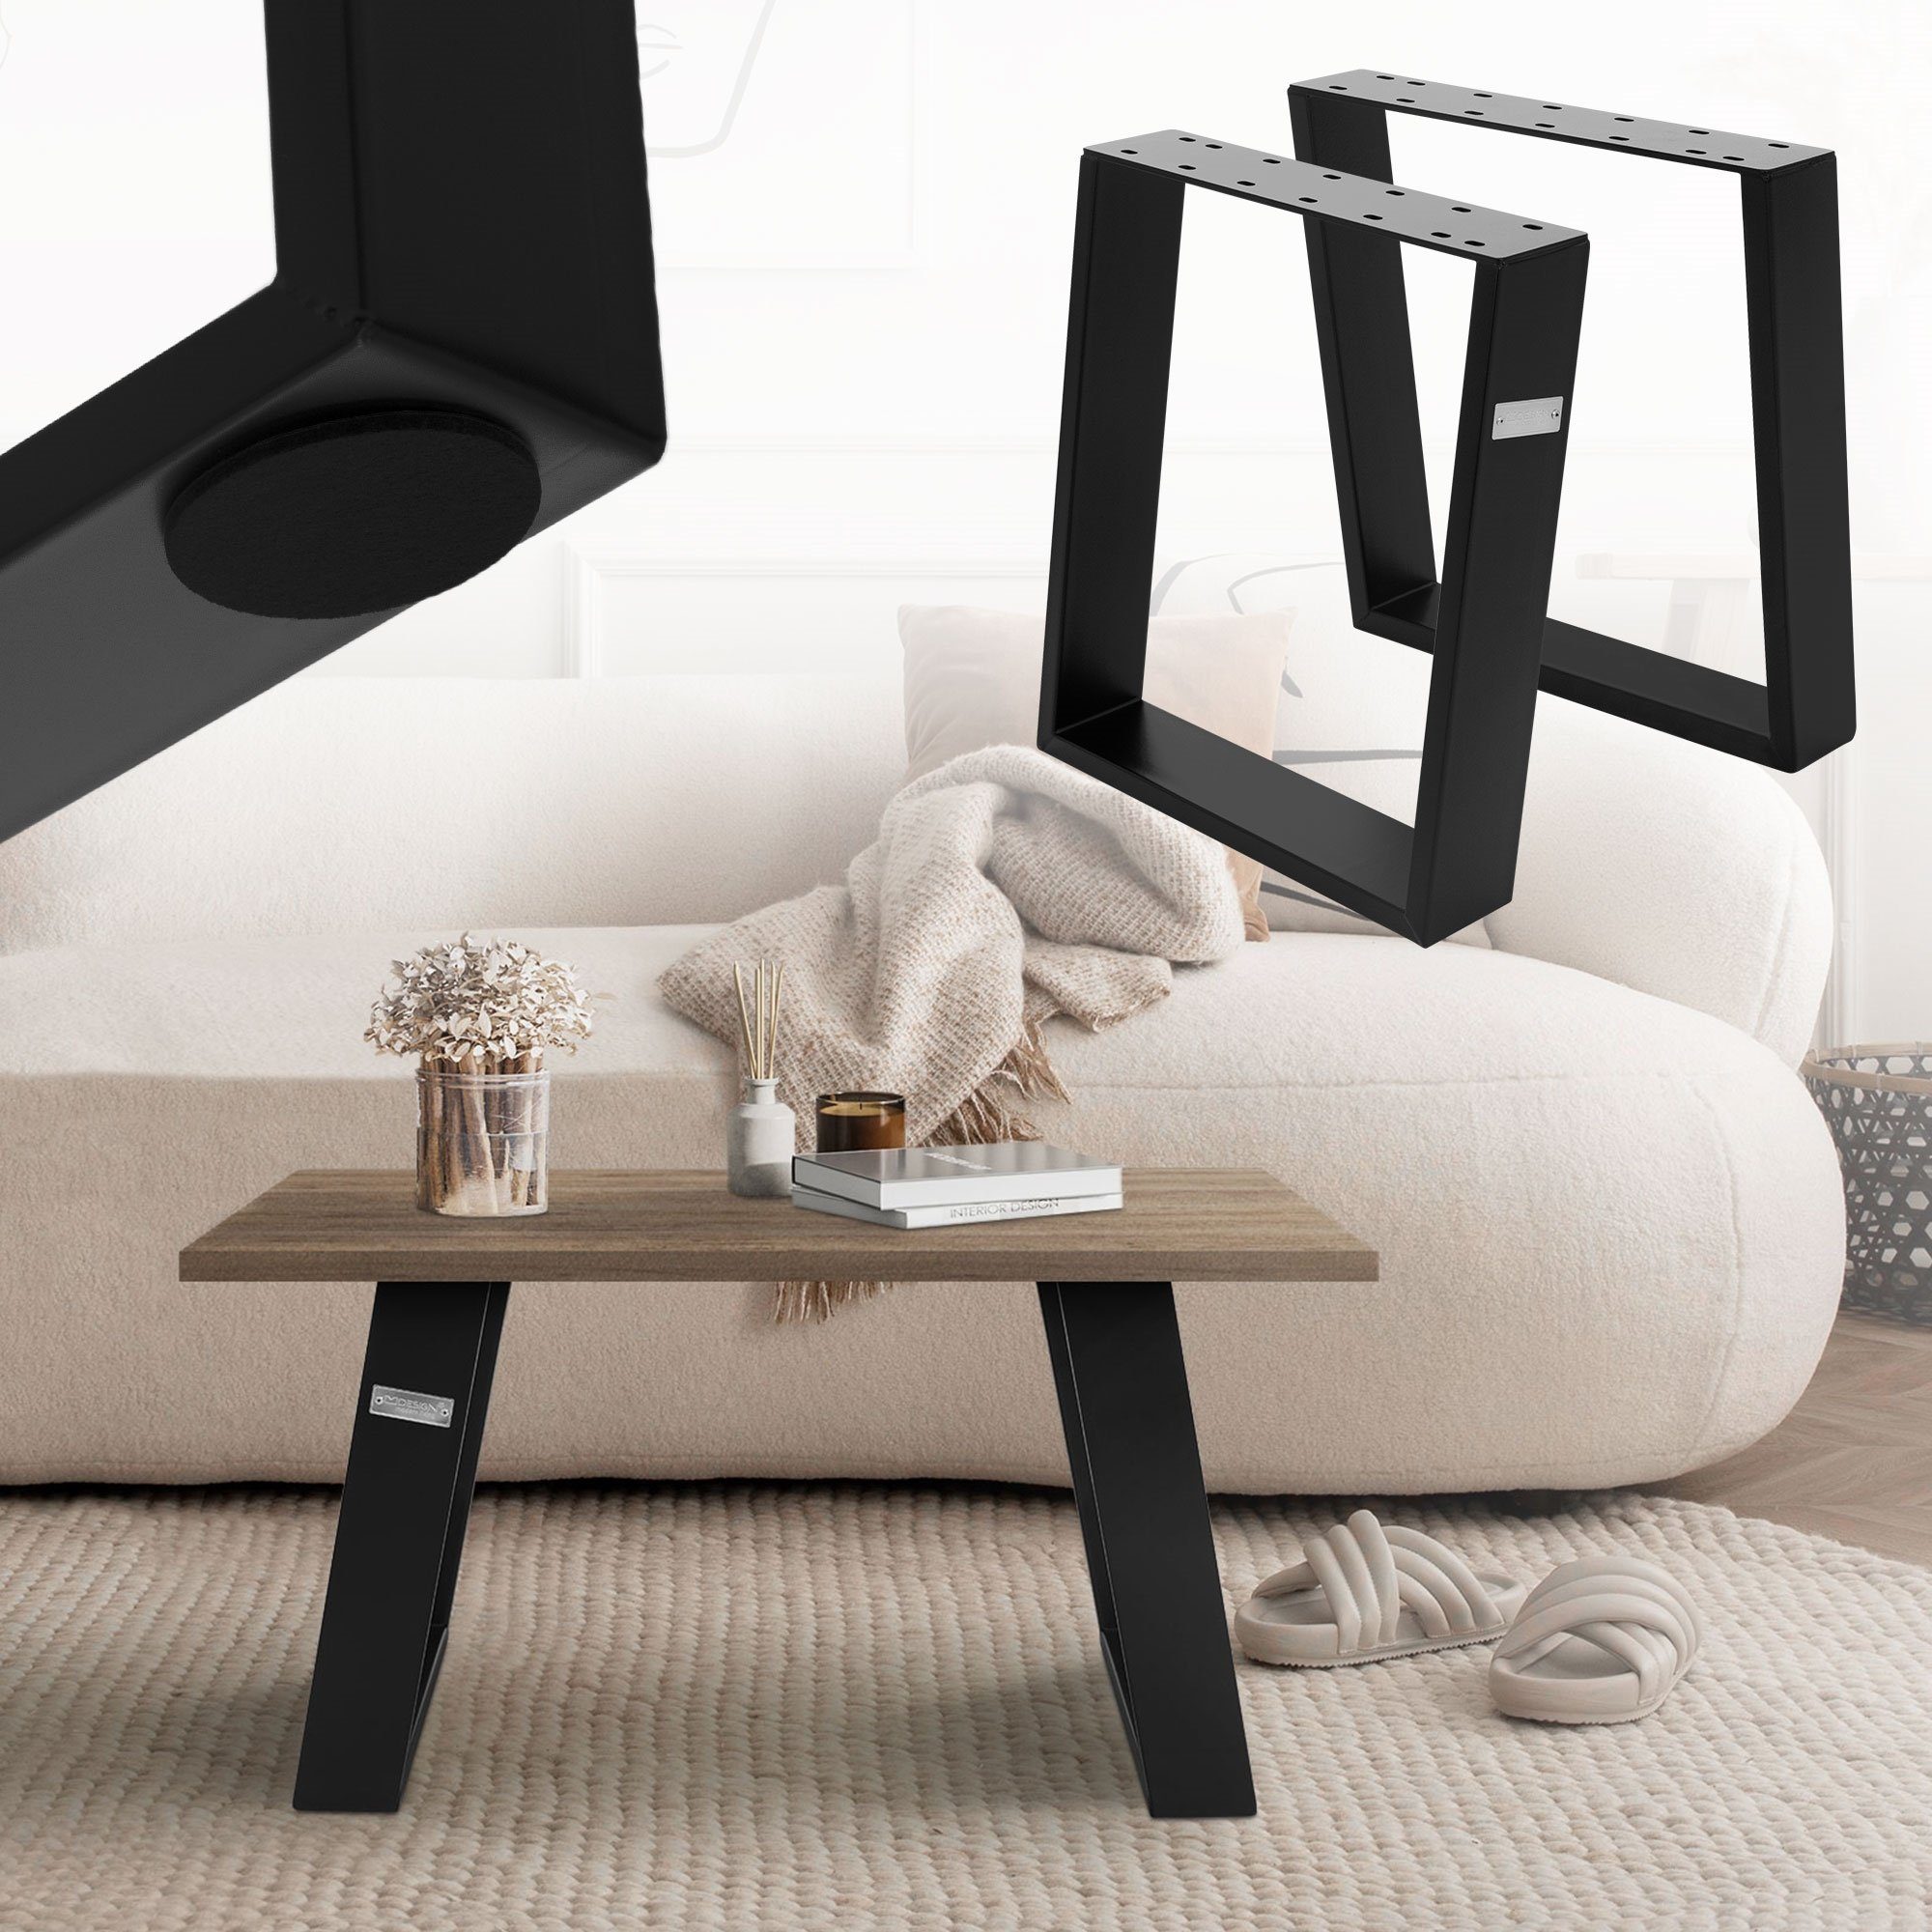 Möbelfüße Schwarz ML-DESIGN Tischbein Tischuntergestell geneigt 80GRAD Couchtisch, für 2er Tischgestell 40x43cm Möbelkufen Set Neigung aus Stahl